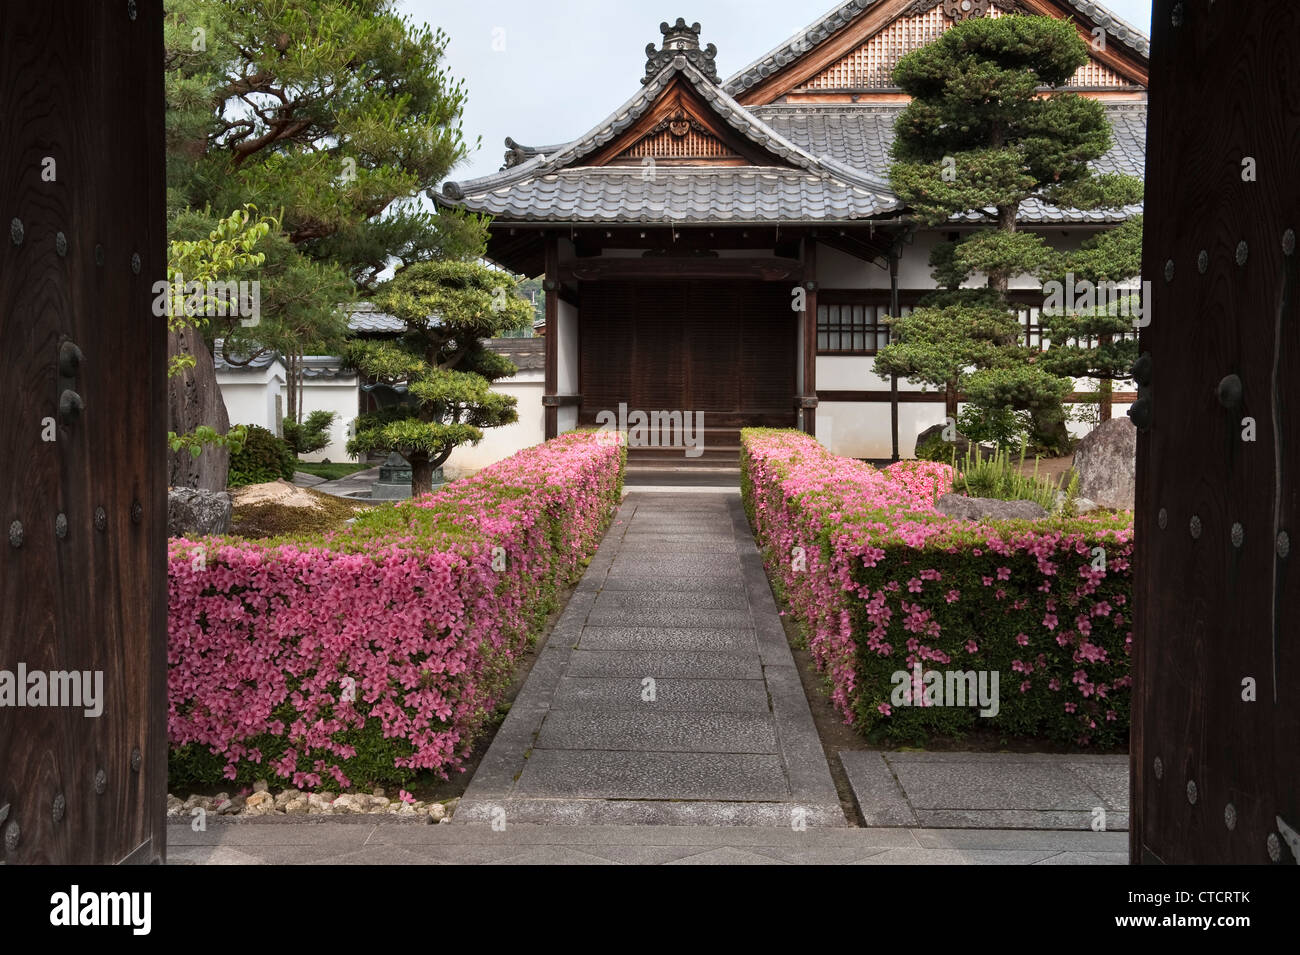 Le siepi tagliate azalea (tsutsuji) fiancheggiano l'ingresso ad un tempio a Myoshinji, Kyoto, Giappone, sede della scuola Rinzai del Buddismo Zen Foto Stock